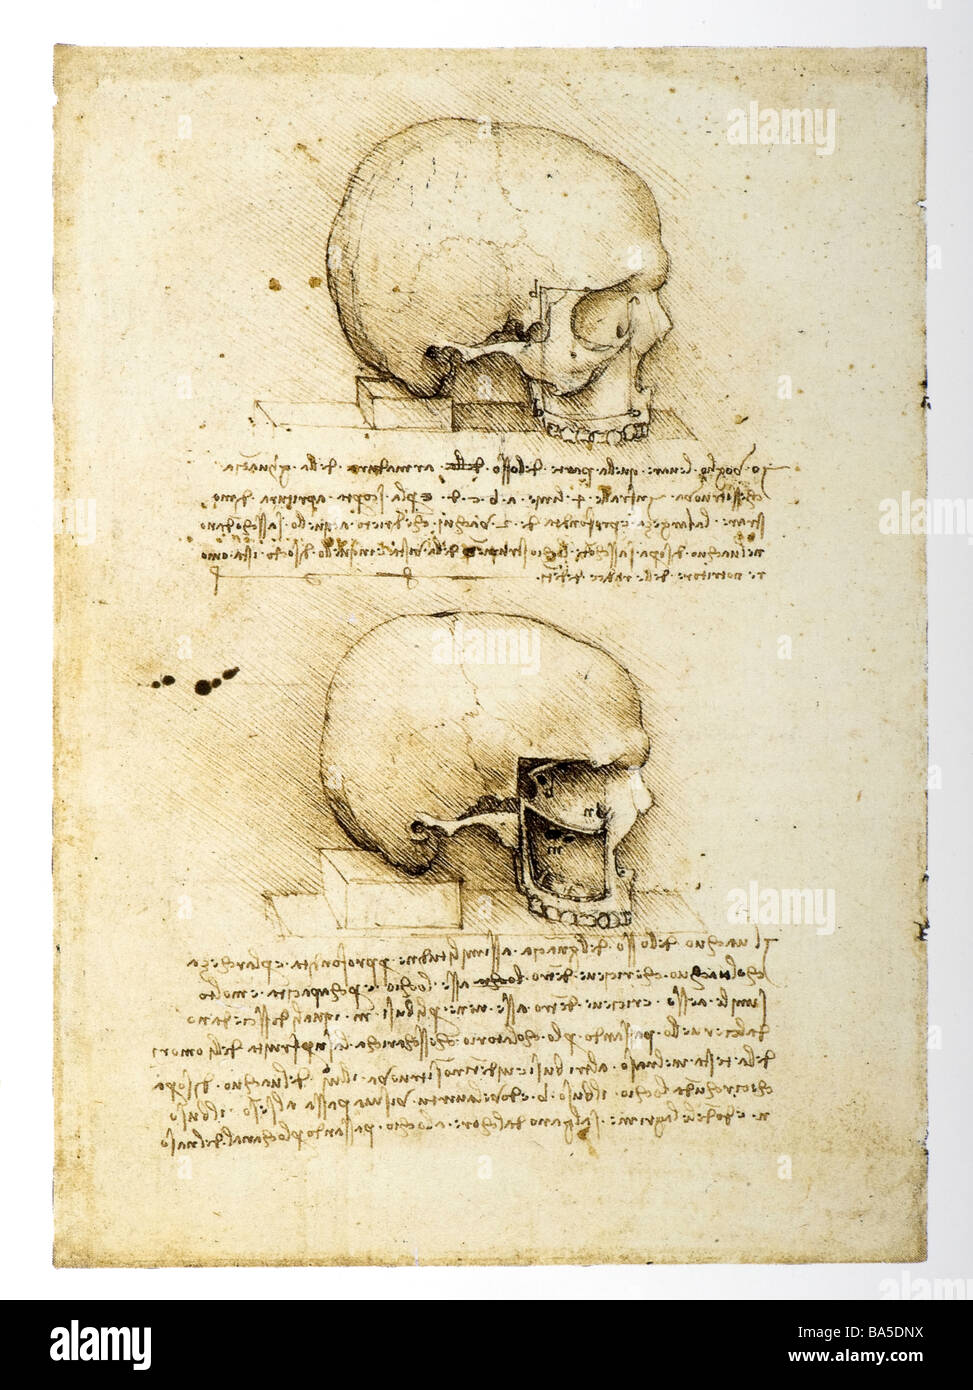 Les études anatomiques du crâne humain par Leonardo da Vinci Banque D'Images